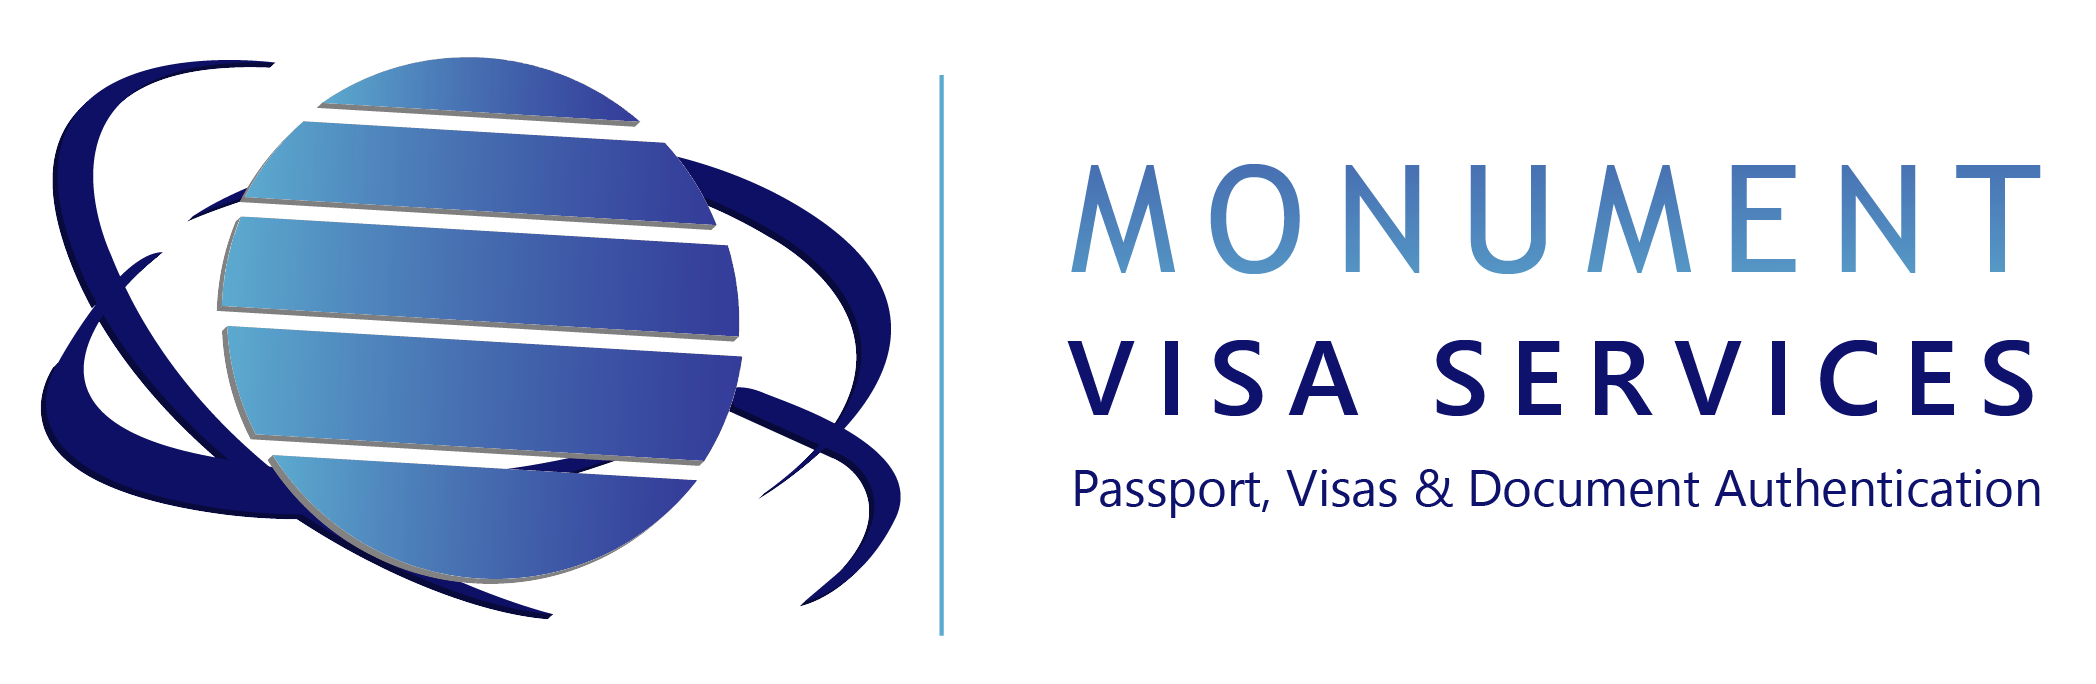 Monument Visa